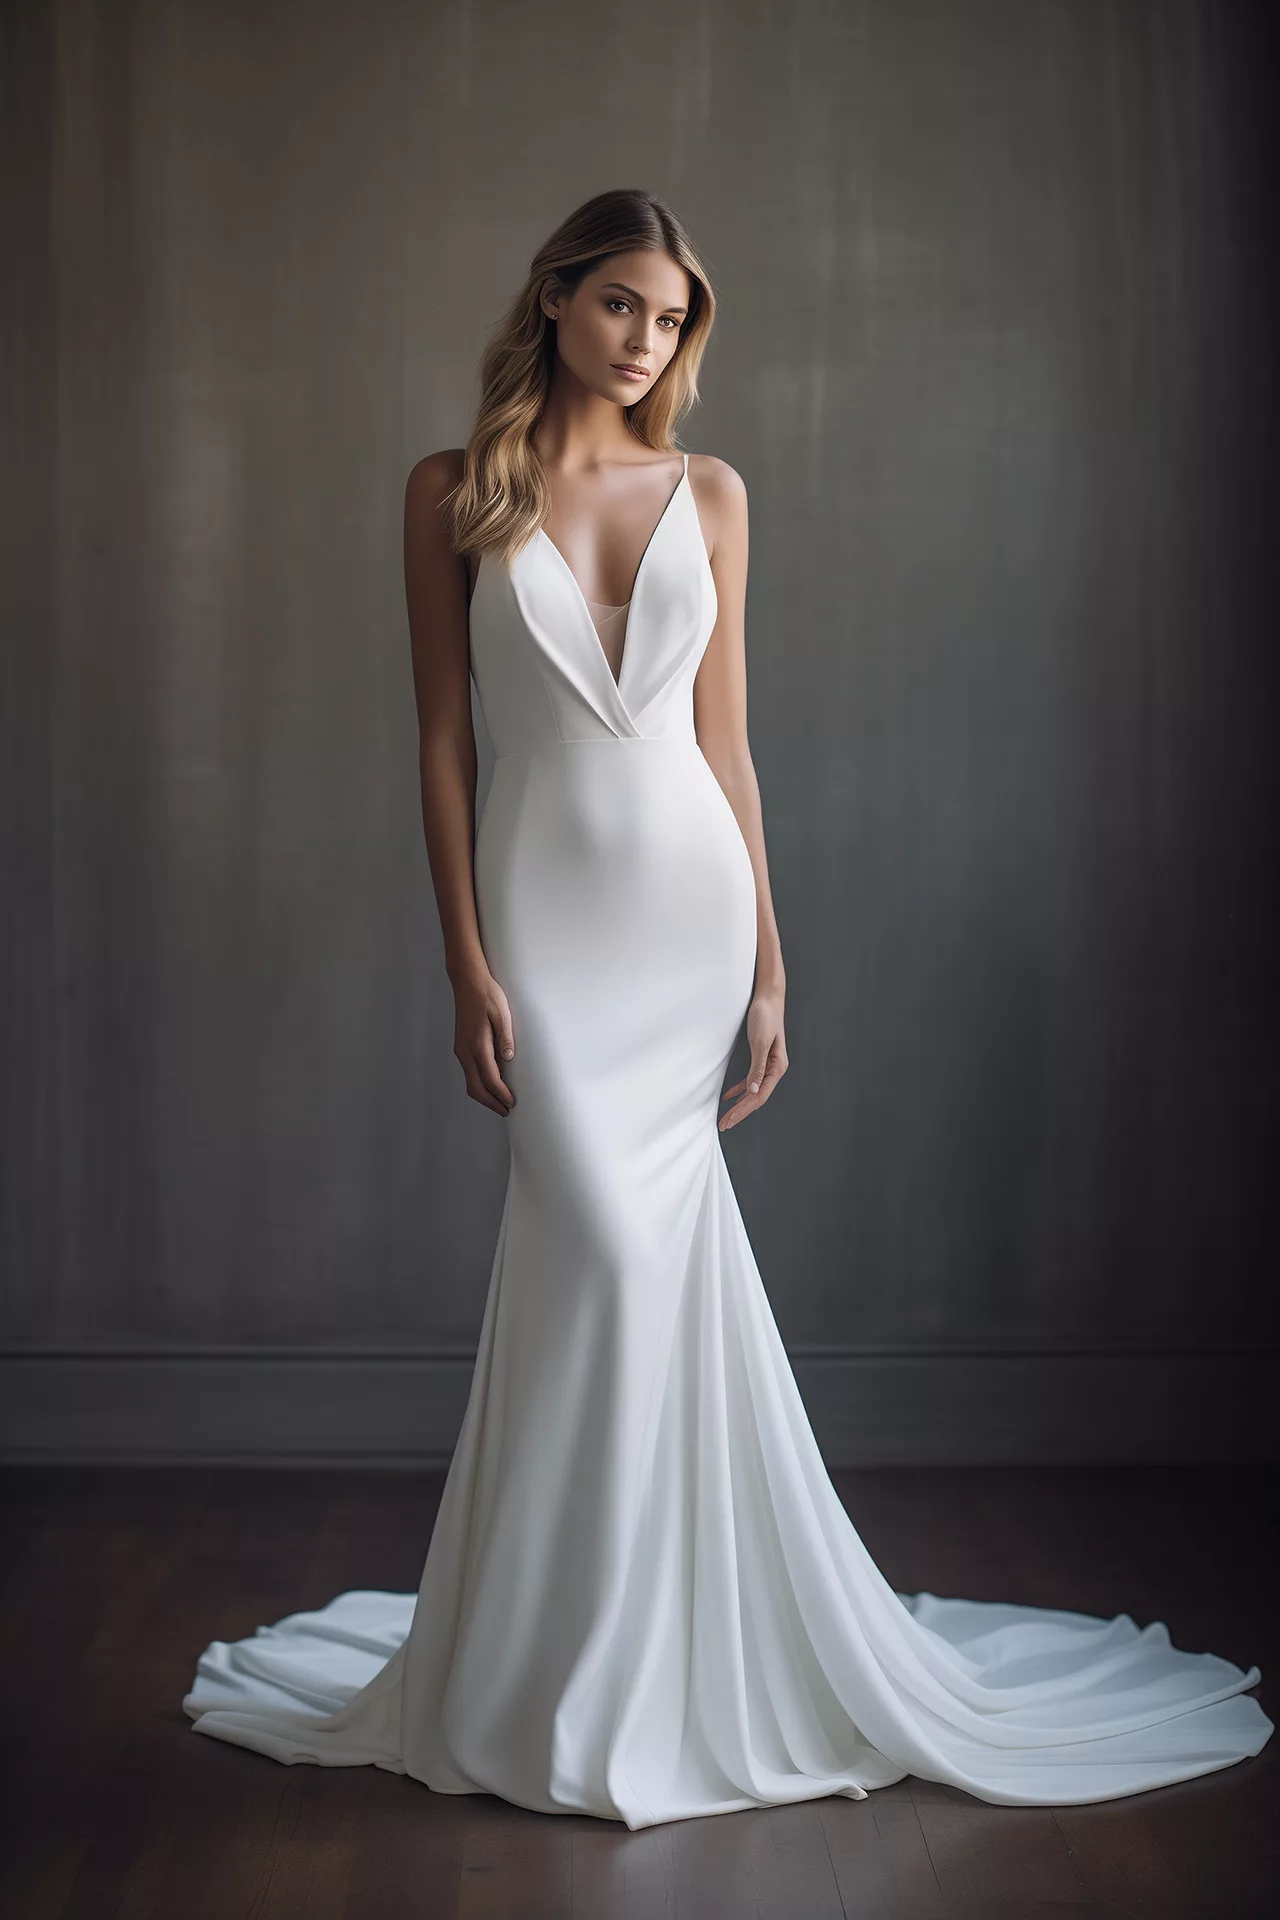 Bridal Styles All Curvy Girls Will Love – Wedding Shoppe